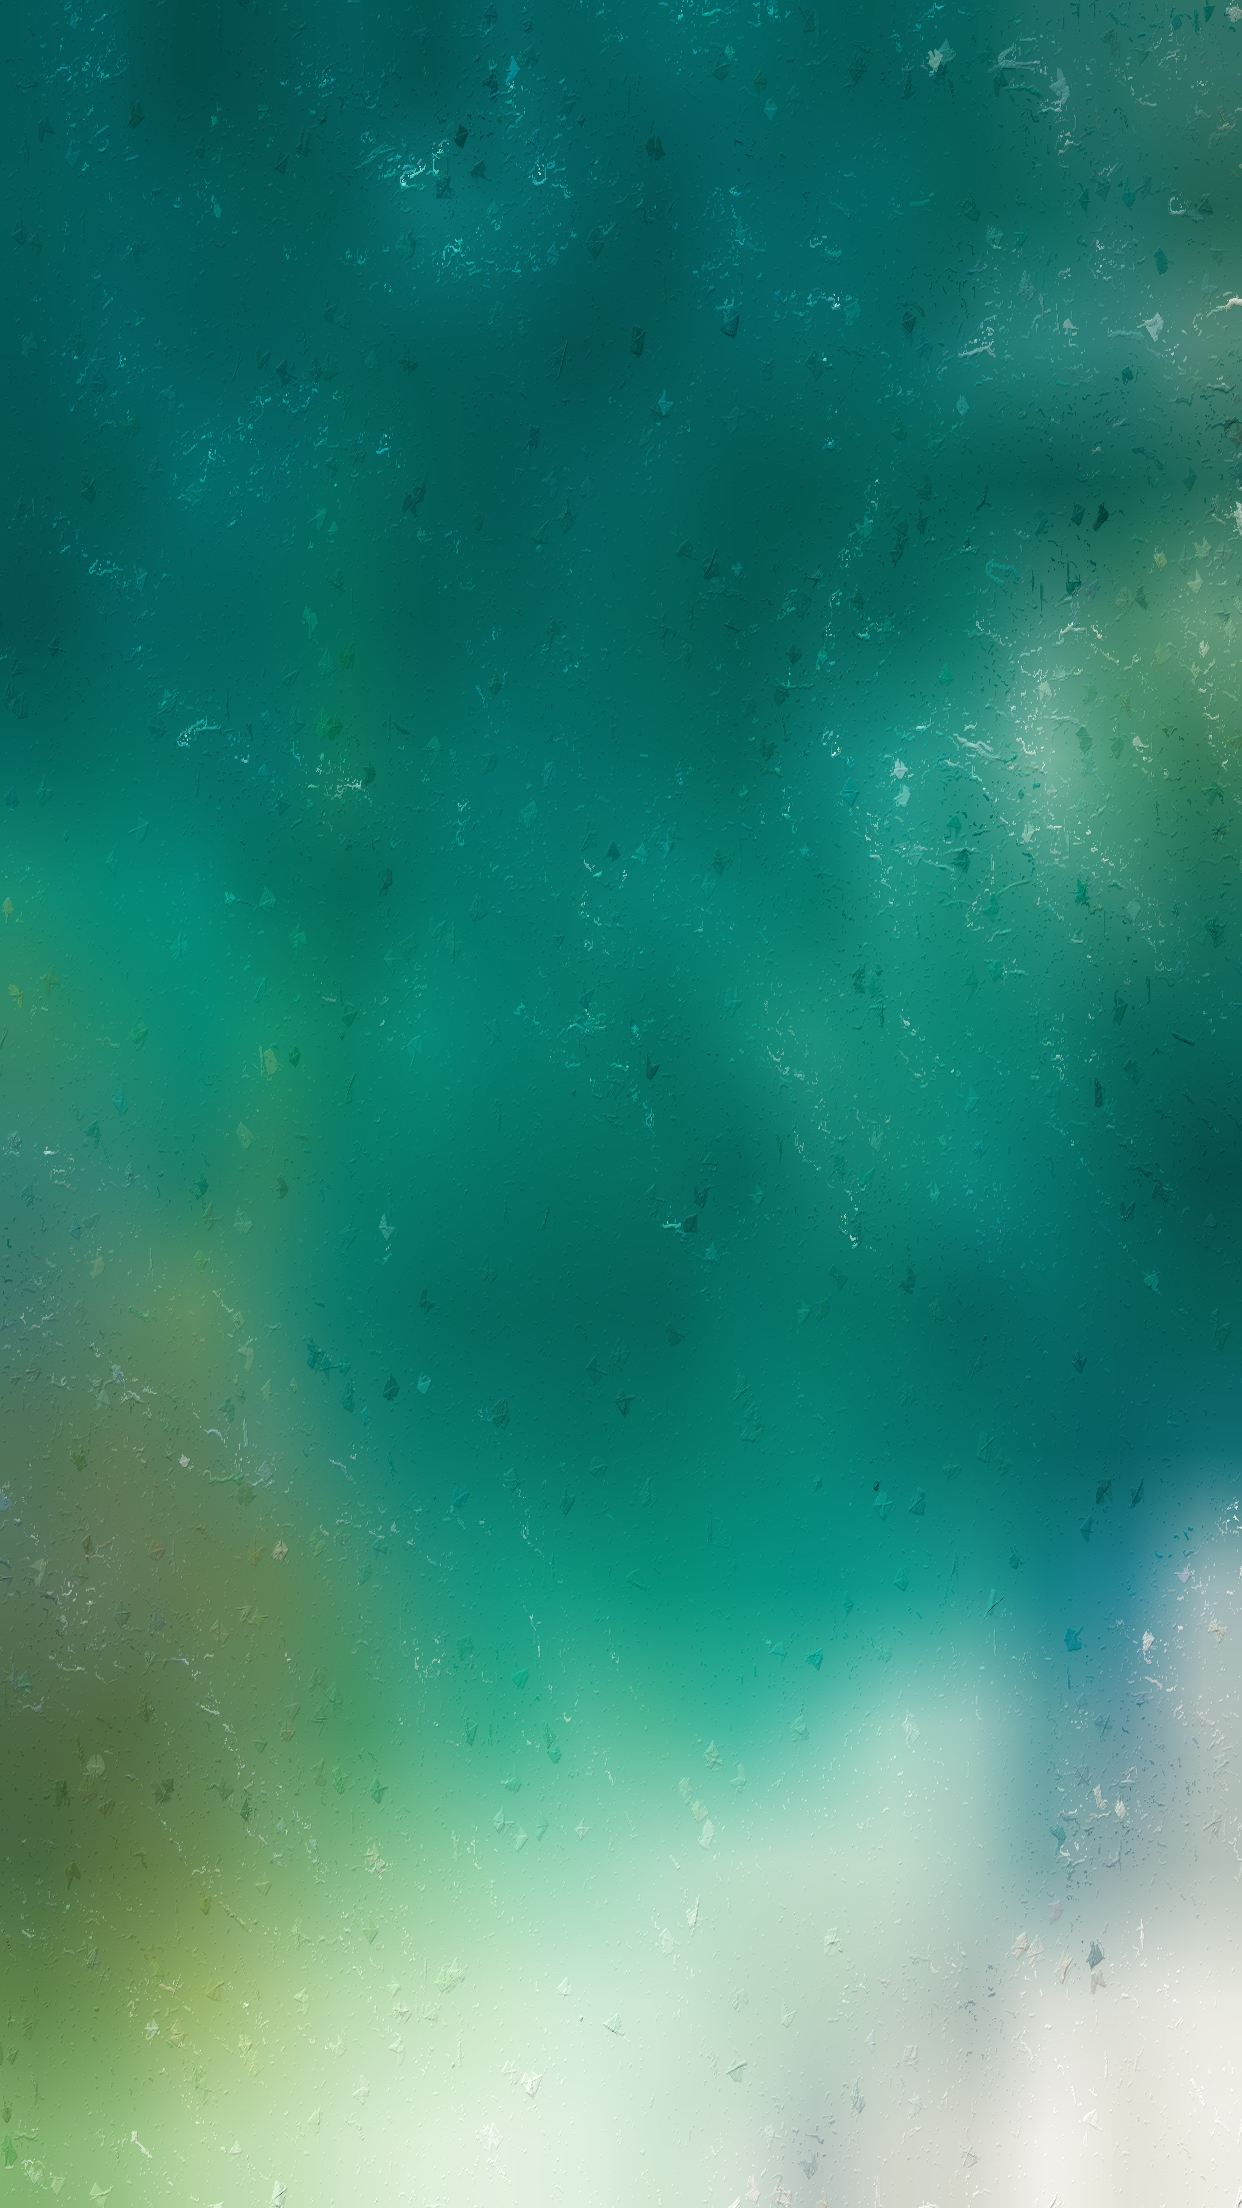 Смартфон Apple iPhone 13 mini 128GB, Green